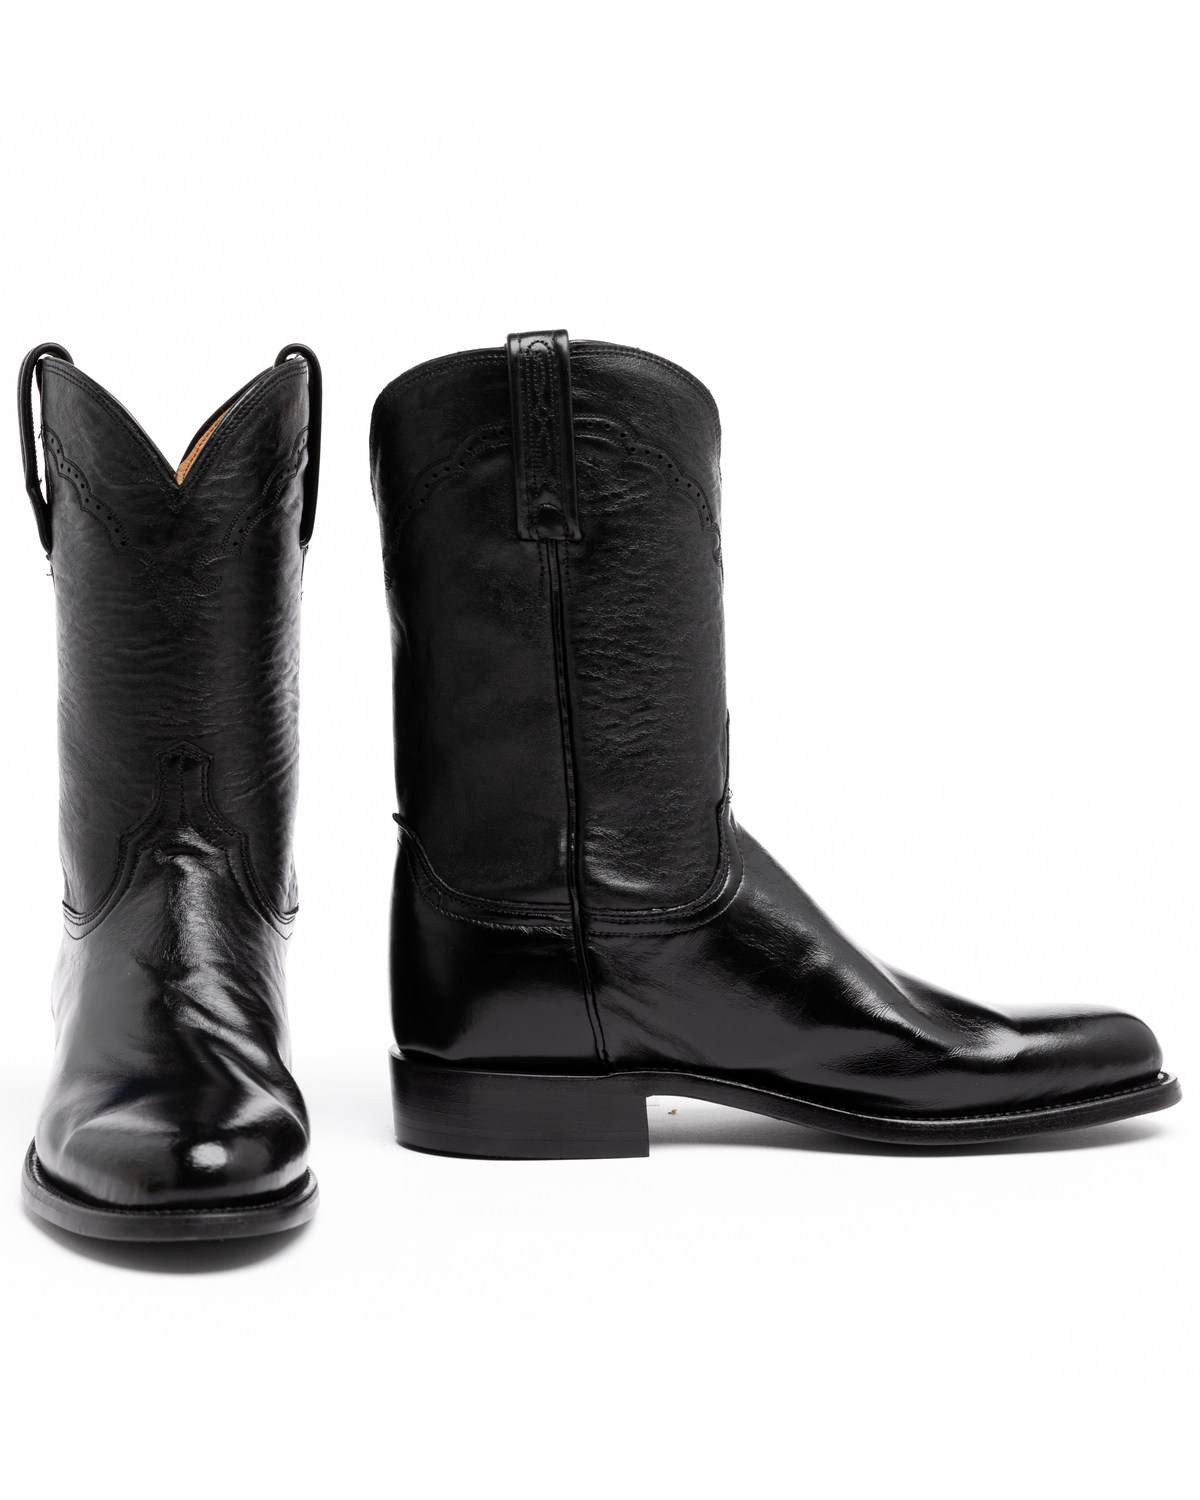 black roper boots